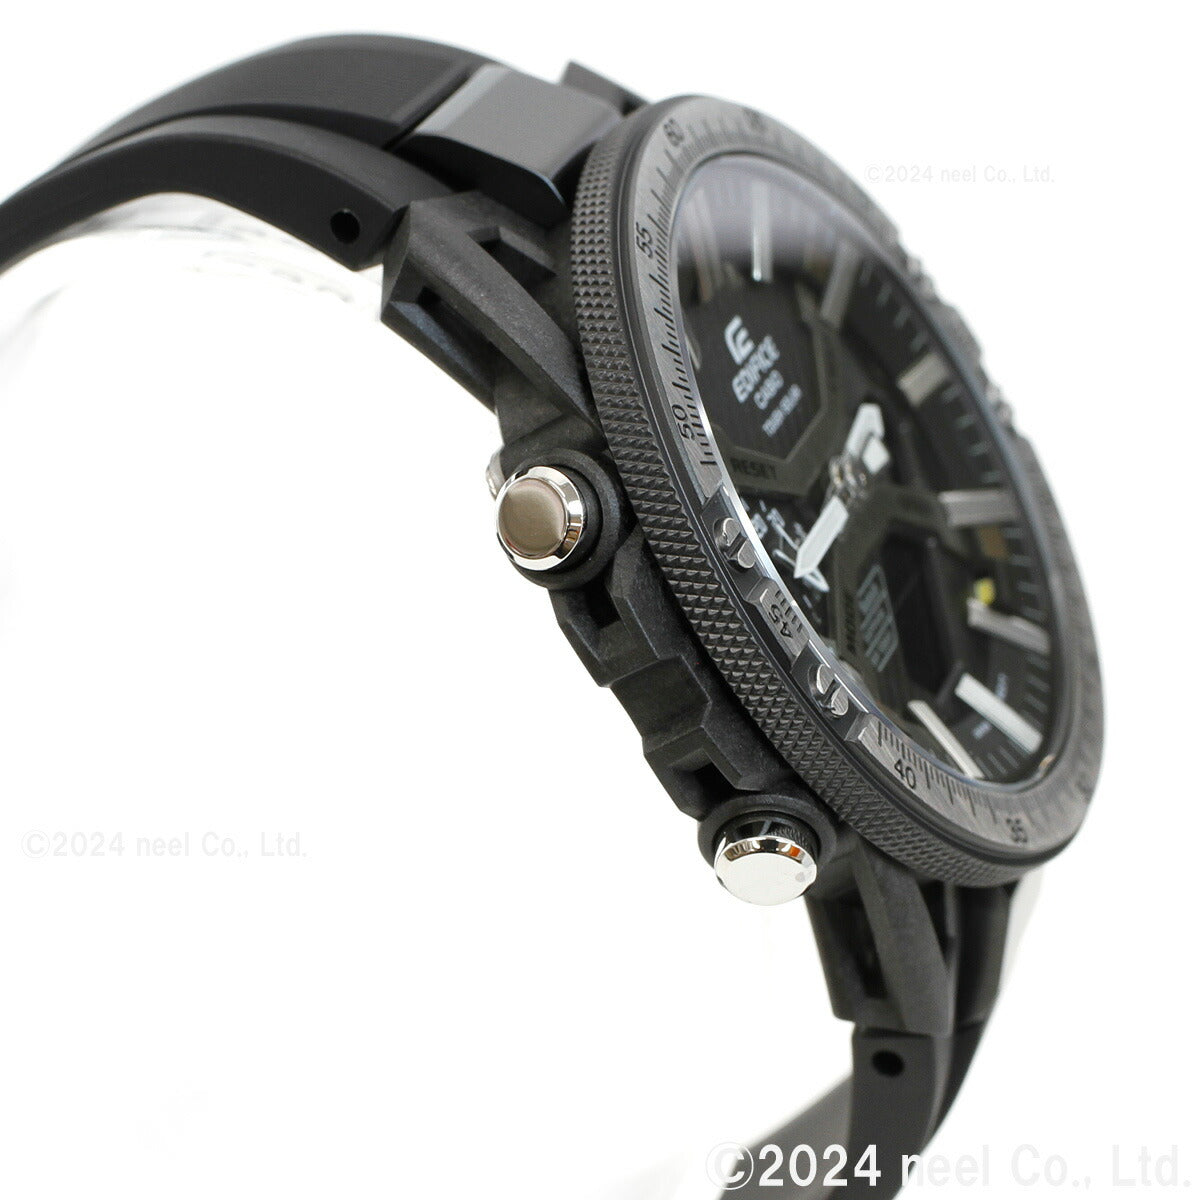 カシオ エディフィス CASIO EDIFICE ソーラー 腕時計 メンズ タフソーラー クロノグラフ ECB-2000YTP-1AJF メカニックツールデザイン スマートフォンリンク